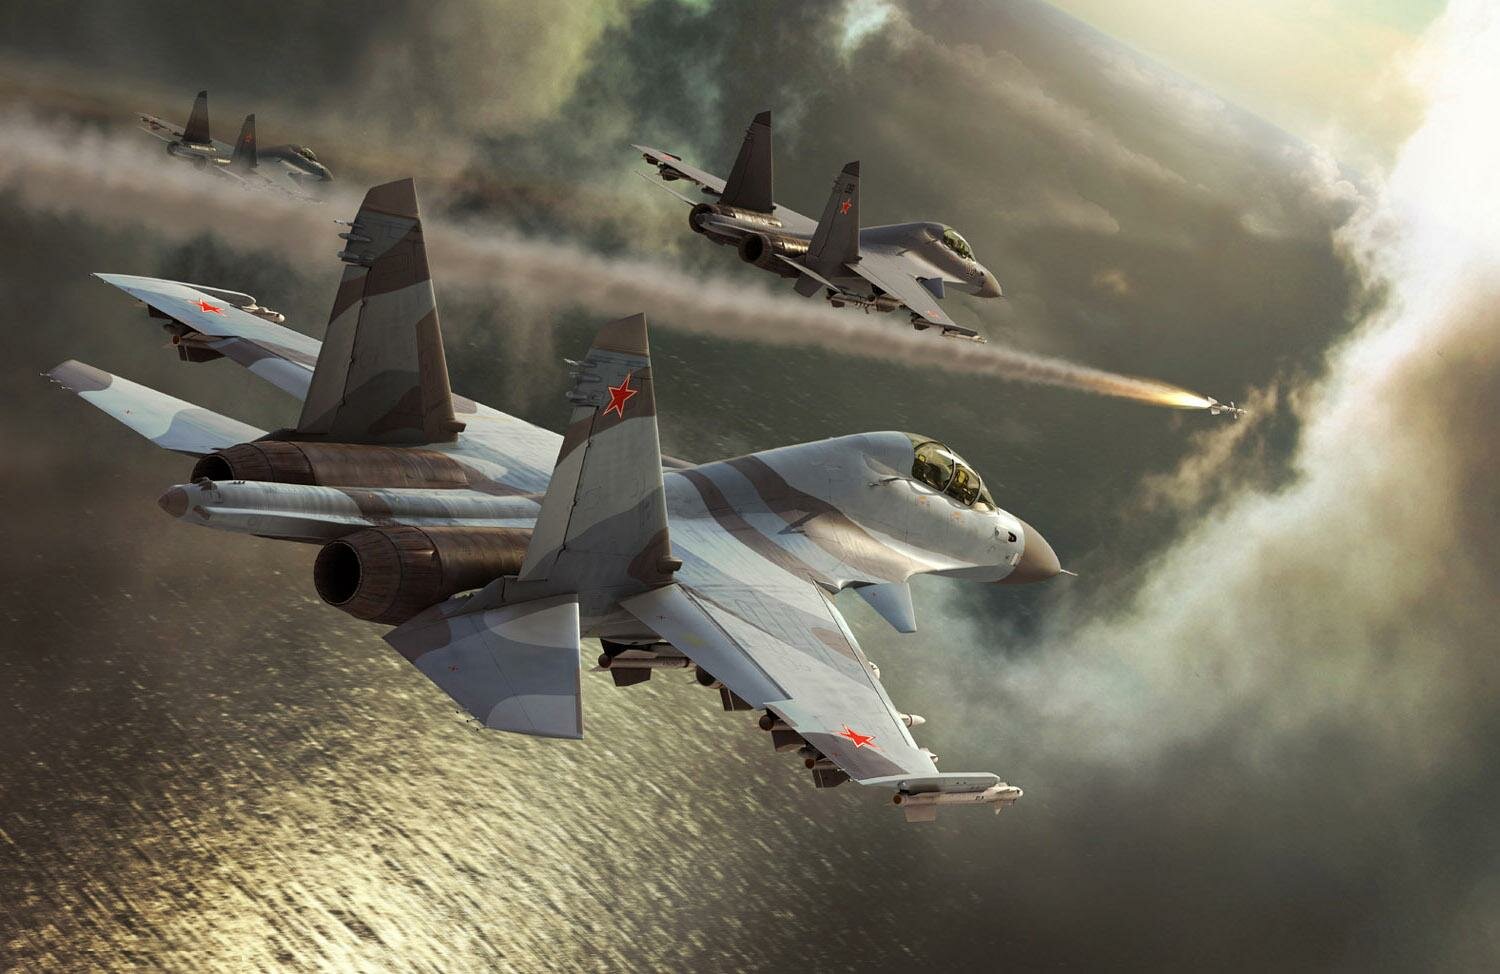 Два истребителя "Су-30" дали жесткий отпор восьми истребителям F-16